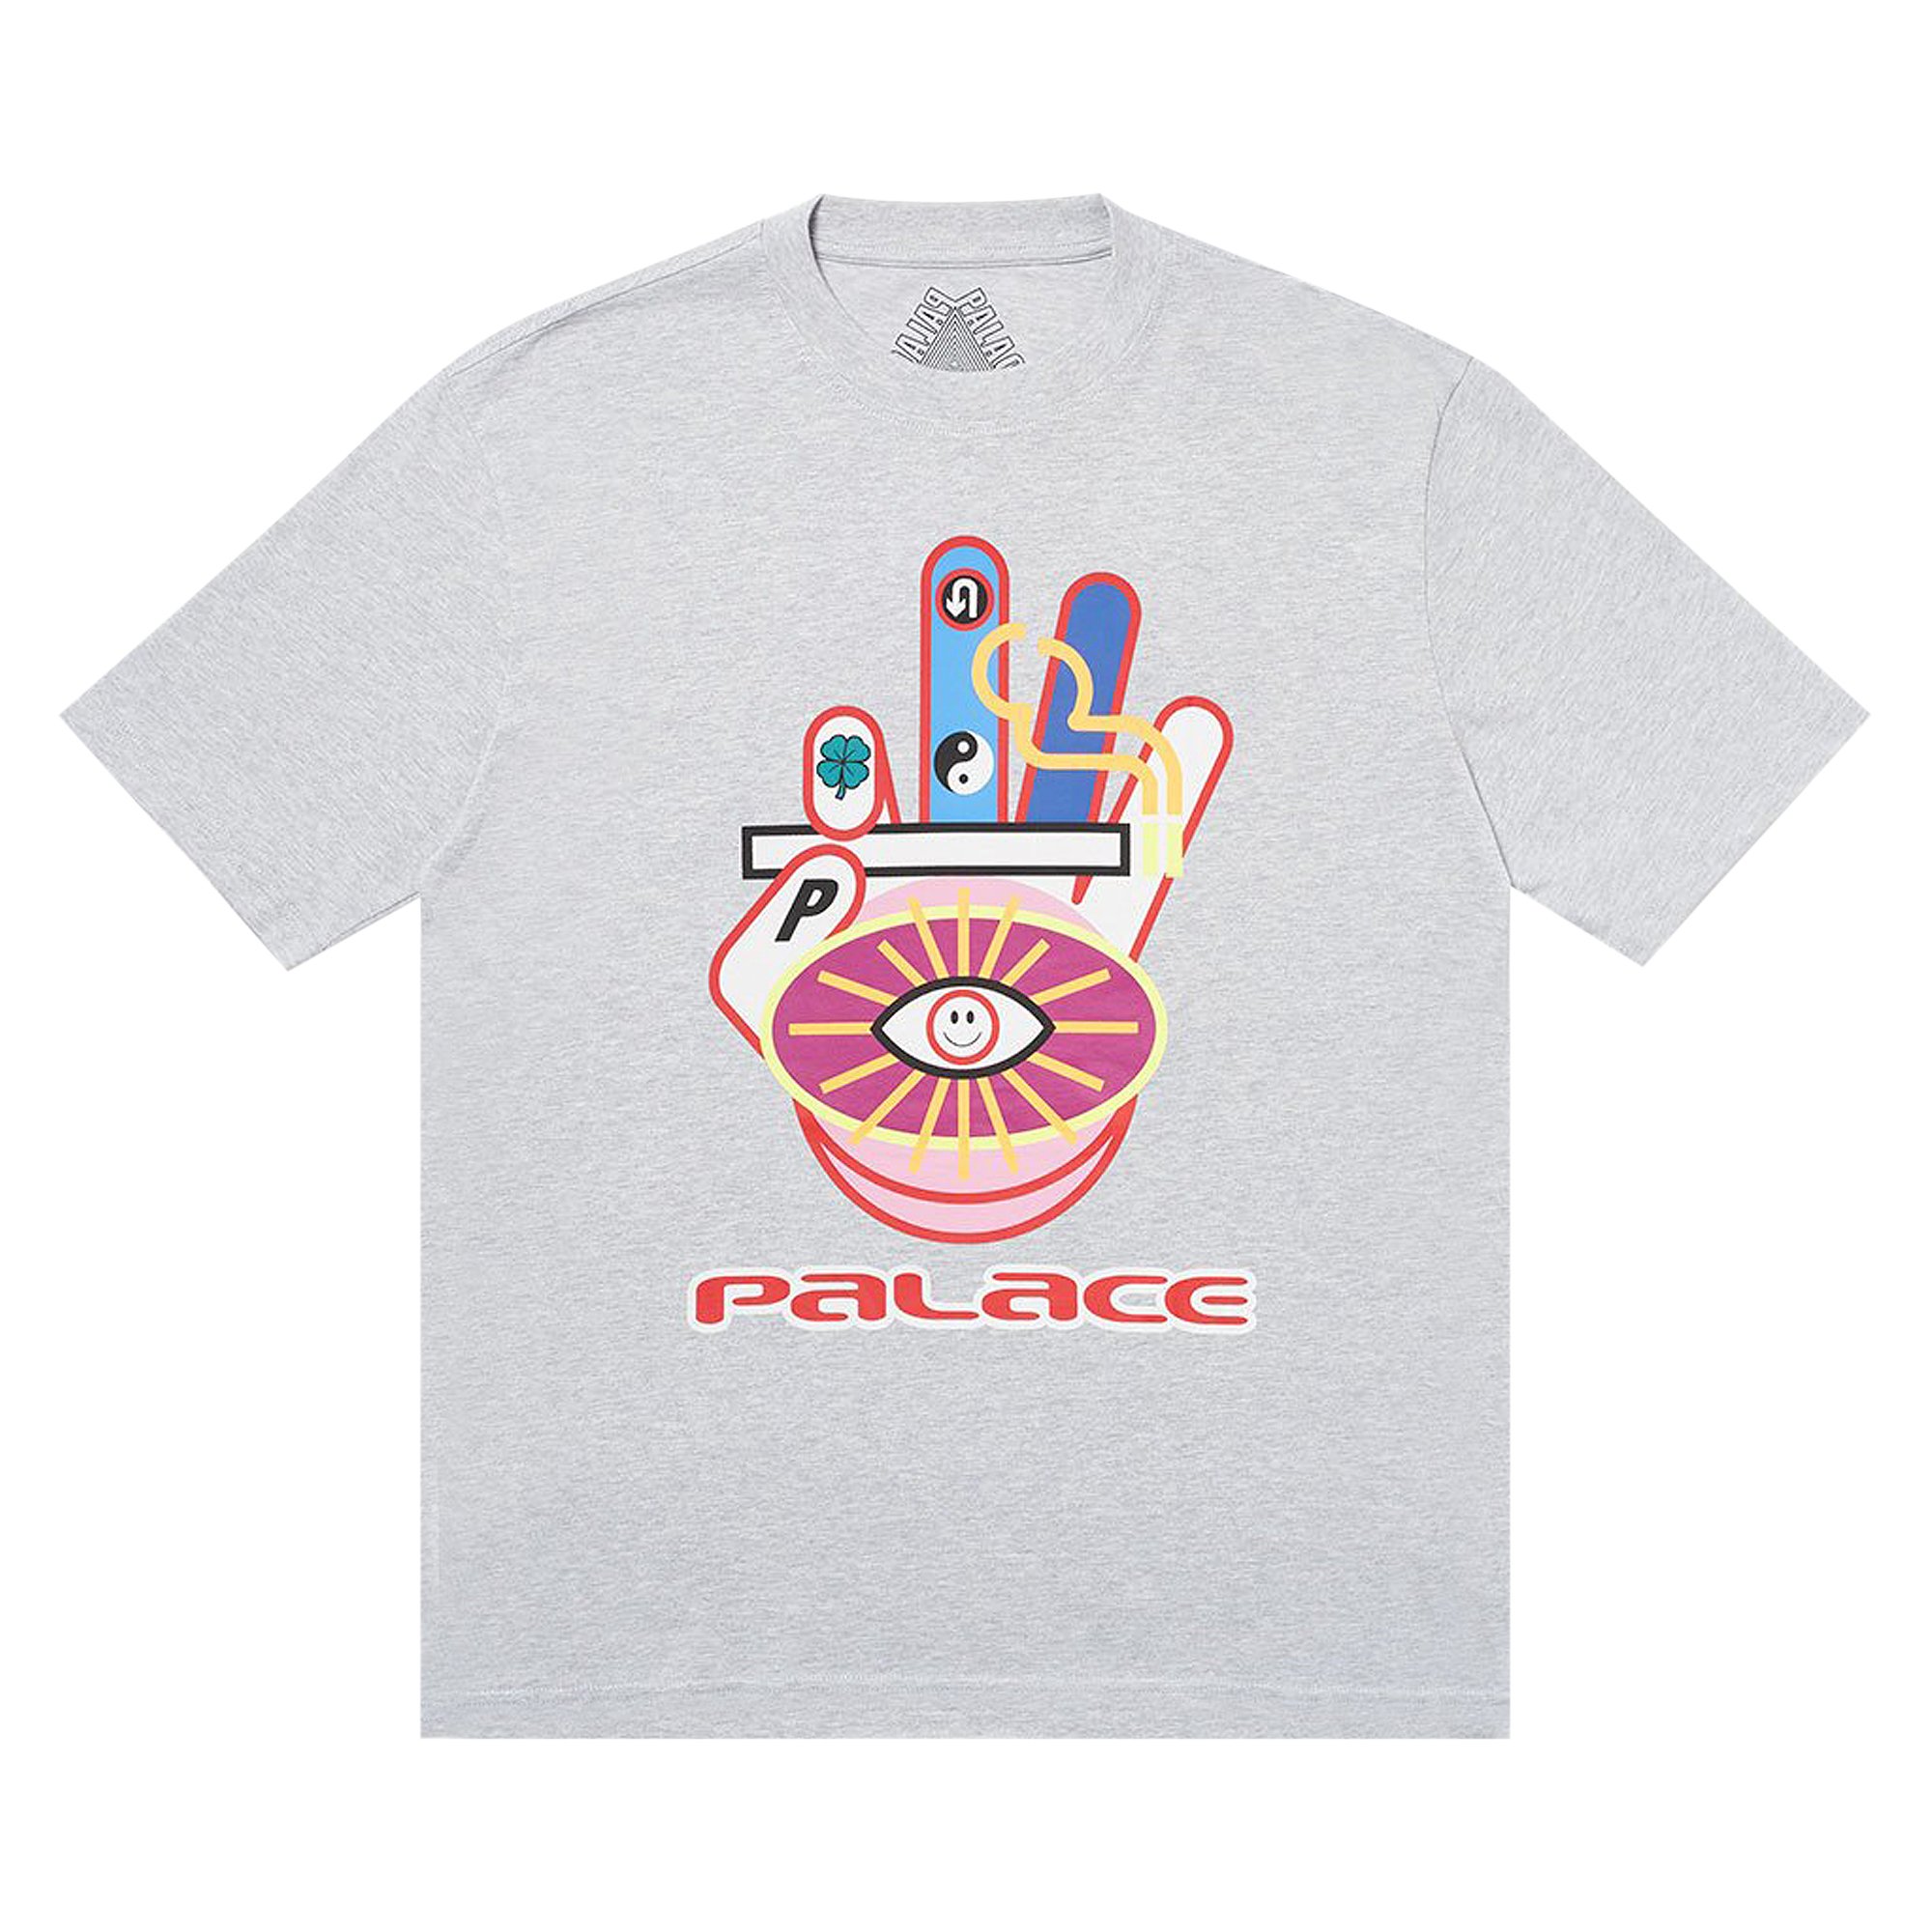 Palace Hippy Cig T-Shirt White